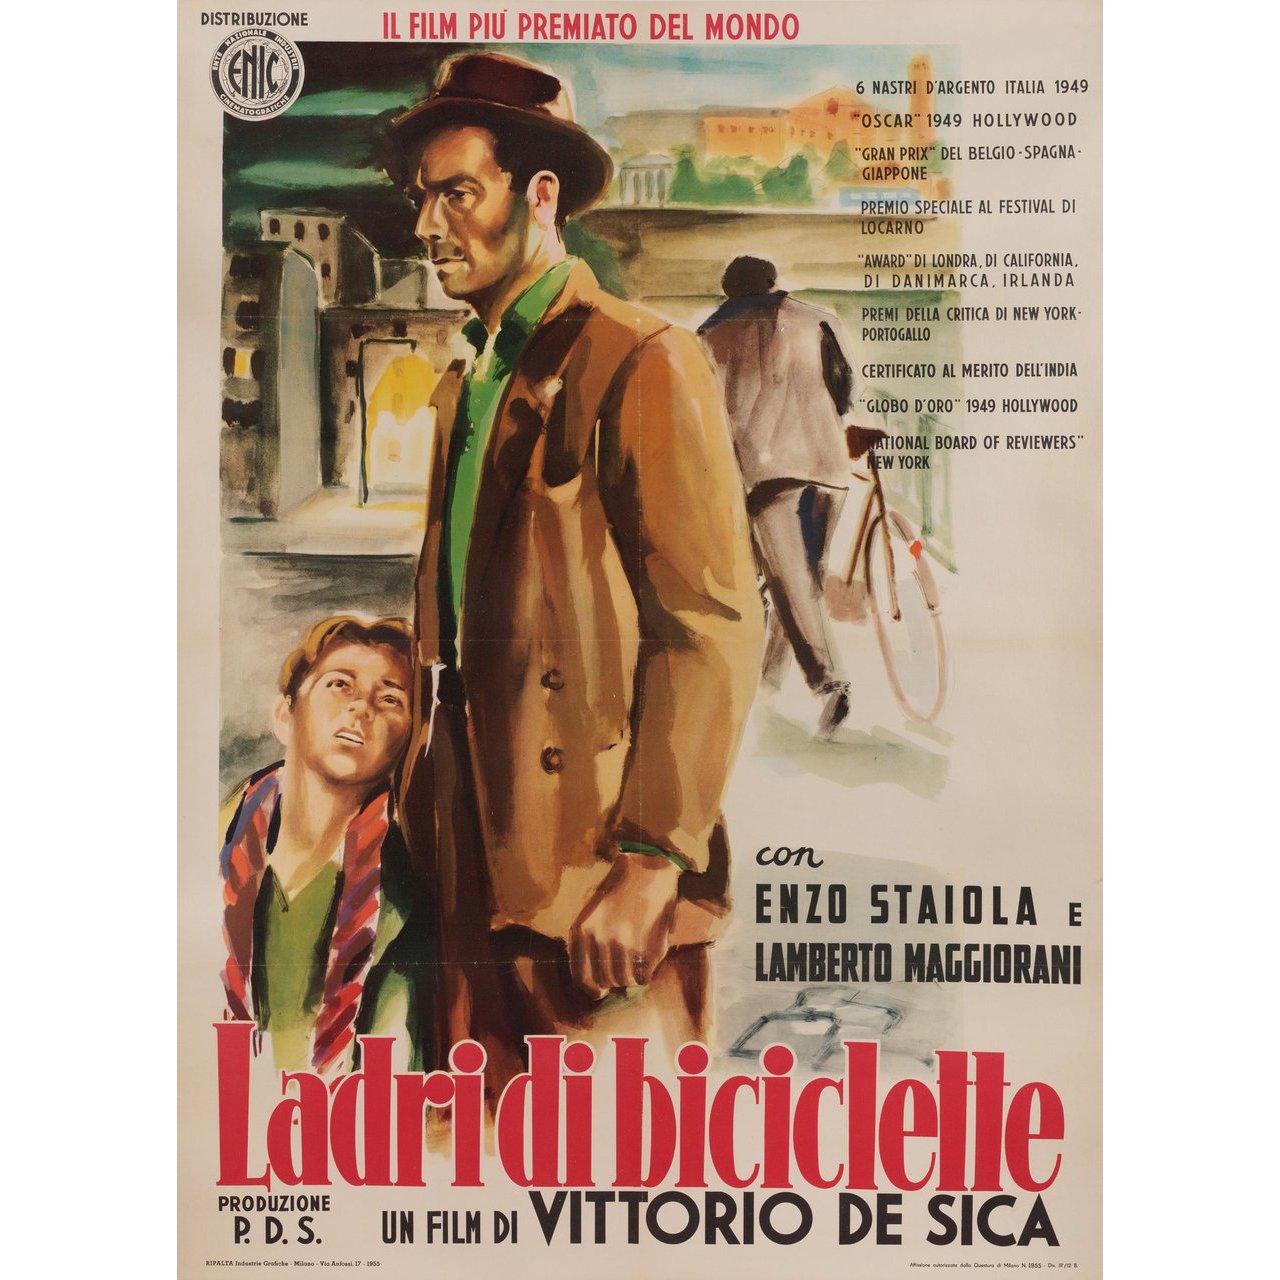 Original 1955 re-release Italian due fogli poster for the 1948 film Bicycle Thieves (Ladri di biciclette) directed by Vittorio De Sica with Lamberto Maggiorani / Enzo Staiola / Lianella Carell / Gino Saltamerenda. Fine condition, linen-backed. This